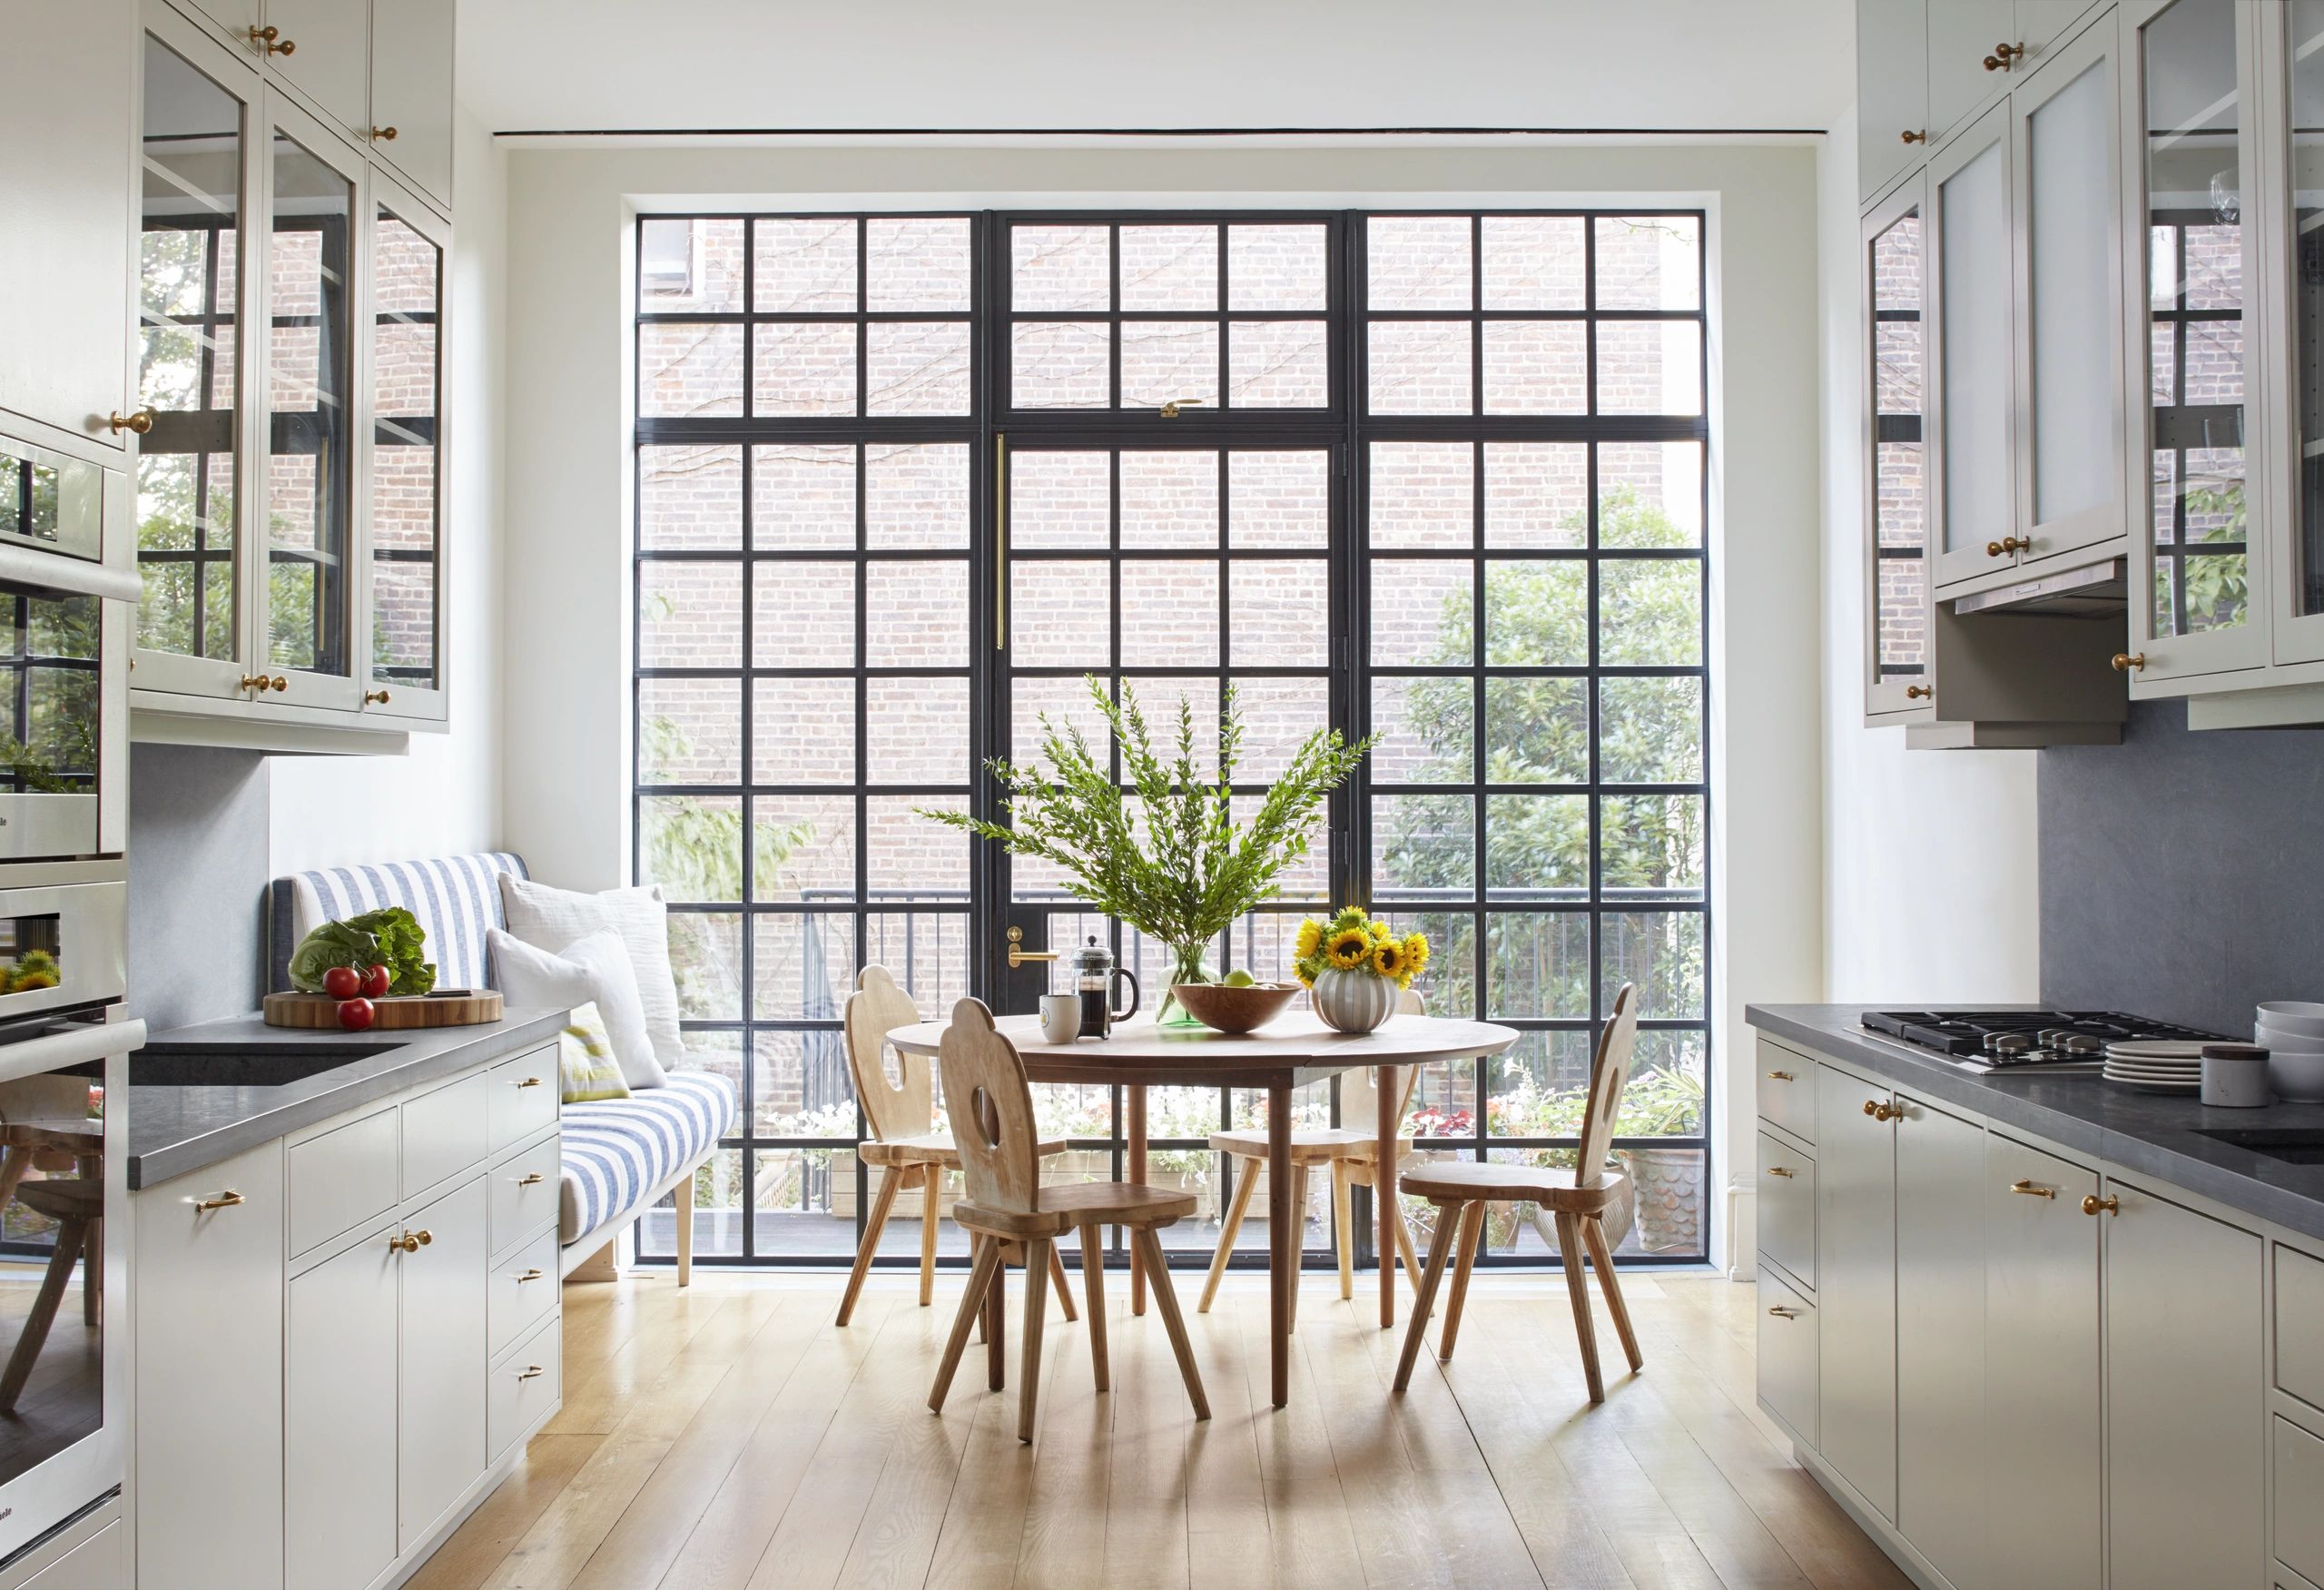 Окна на кухне купить. Кухня с большими окнами. Кухня с панорамными окнами. Кухня с окном. Интерьер кухни с окном.